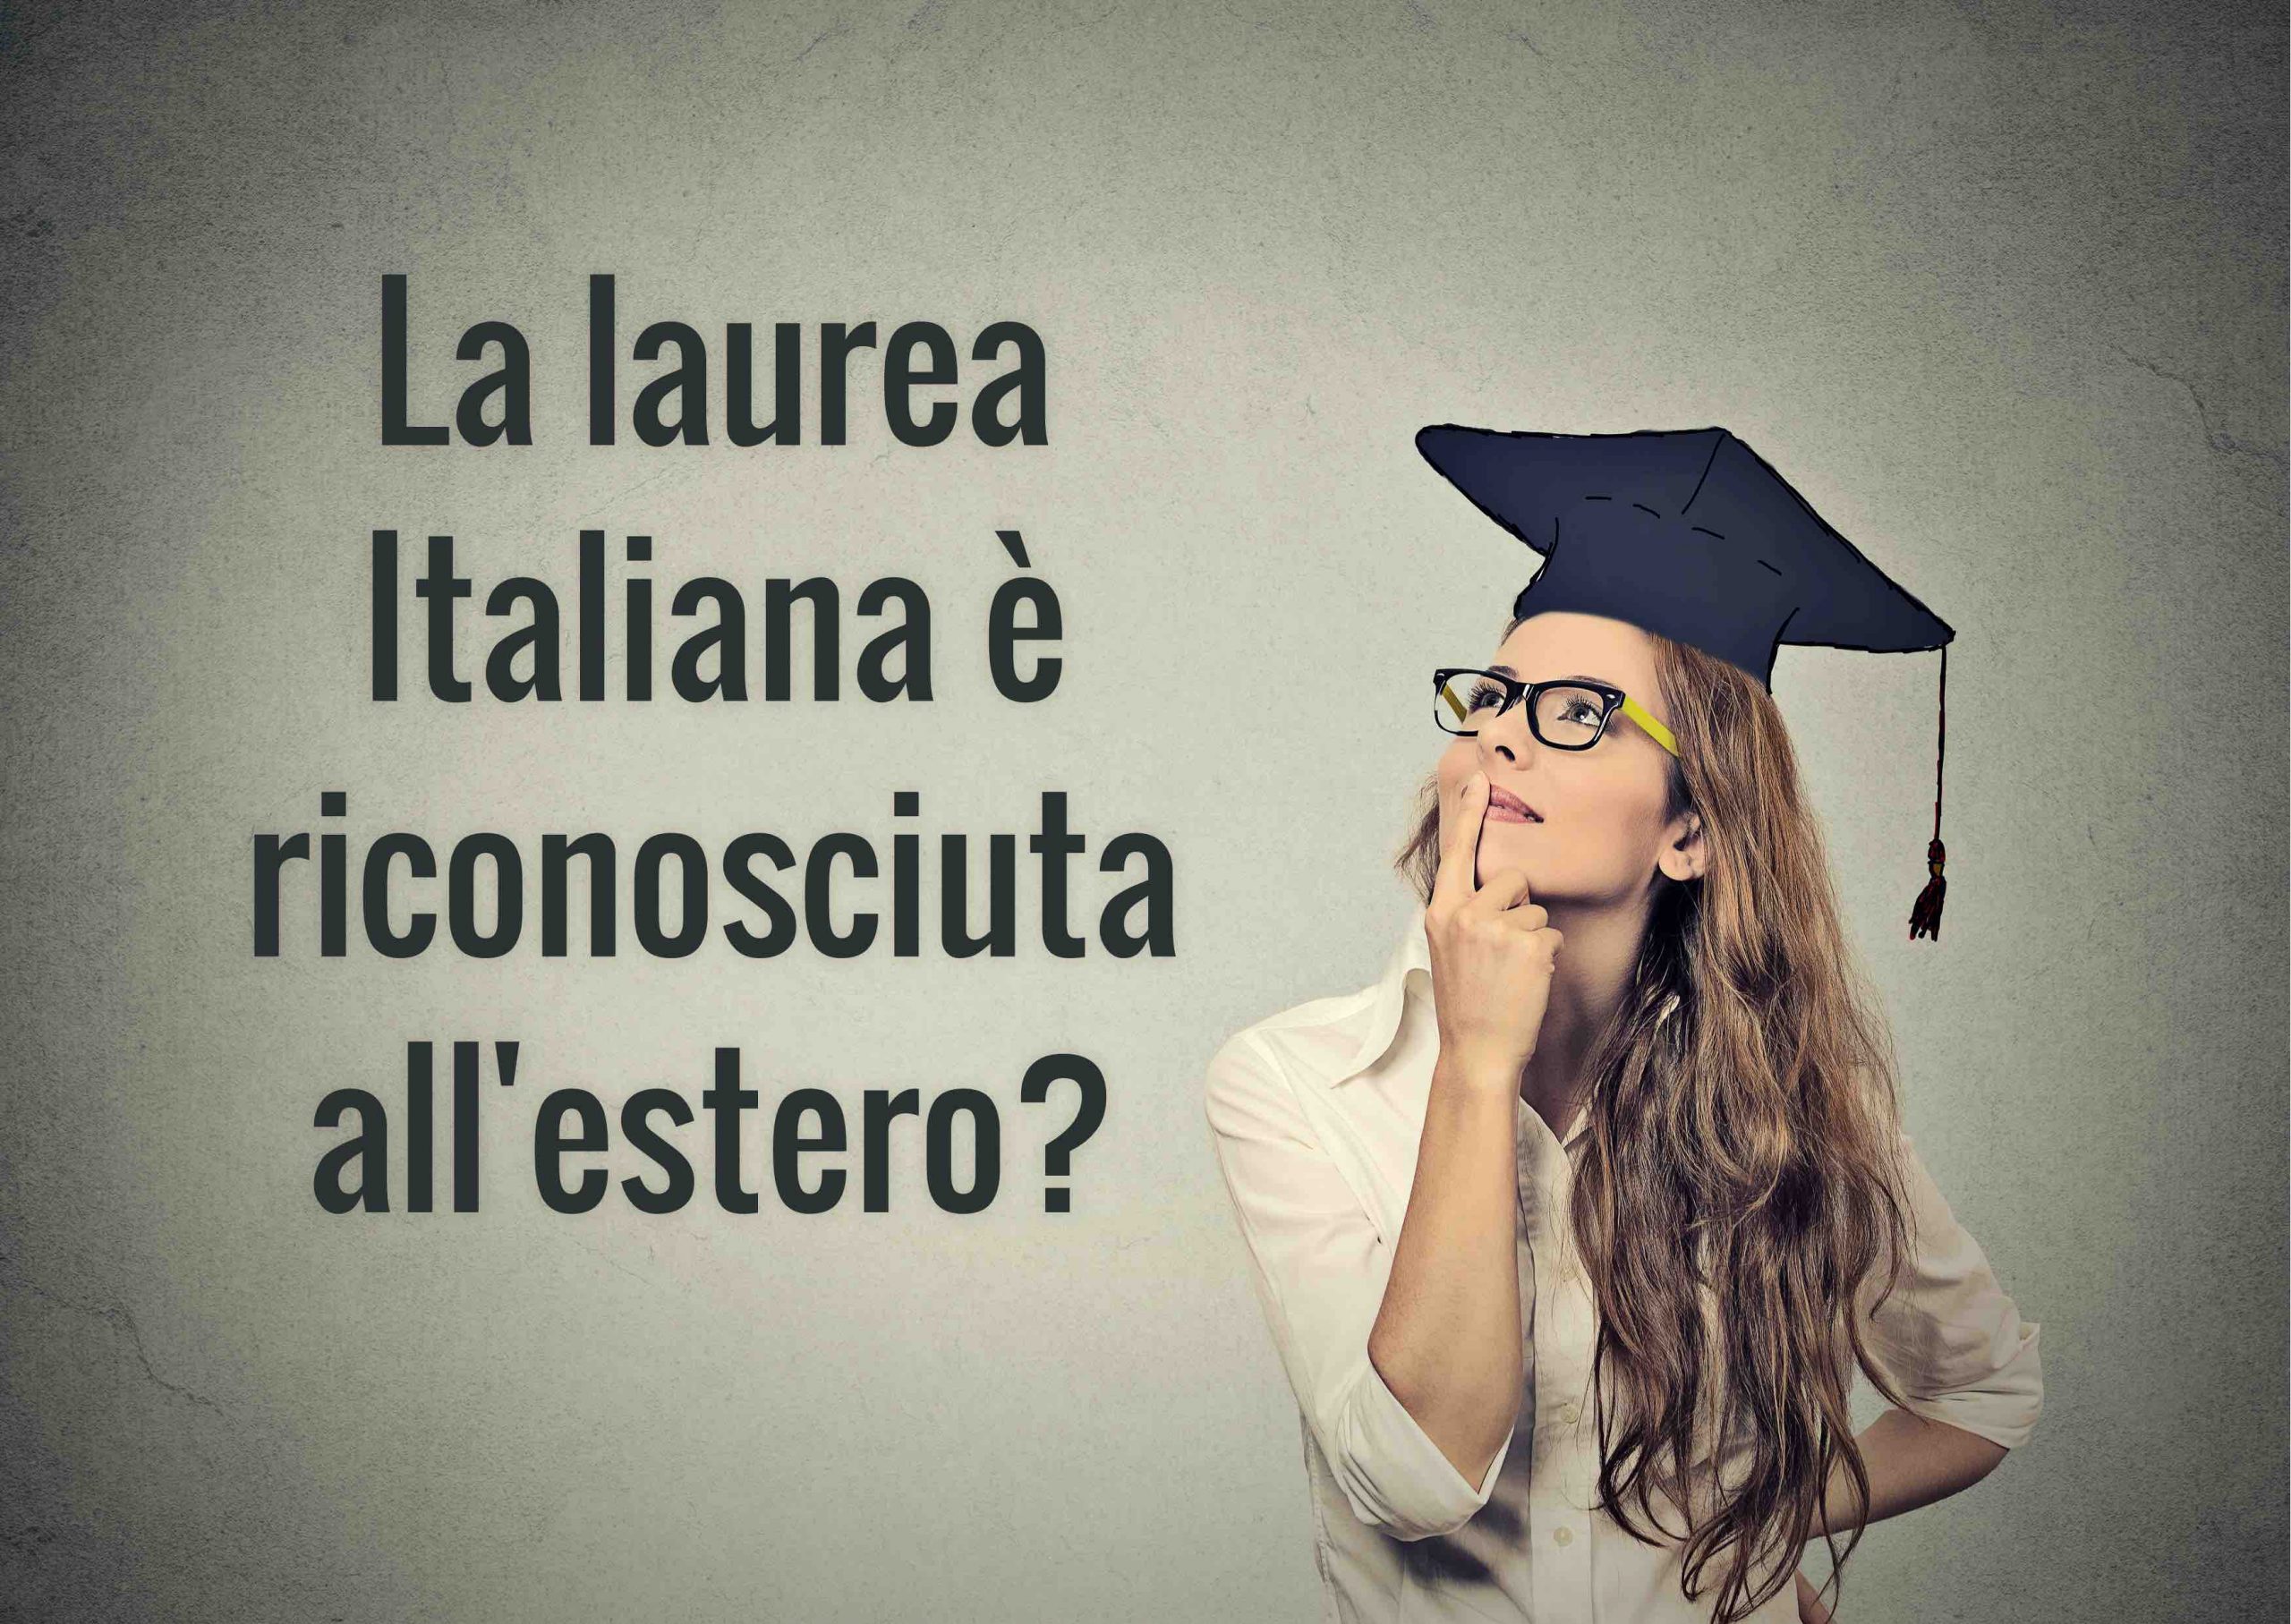 la laurea italiana vale anche estero